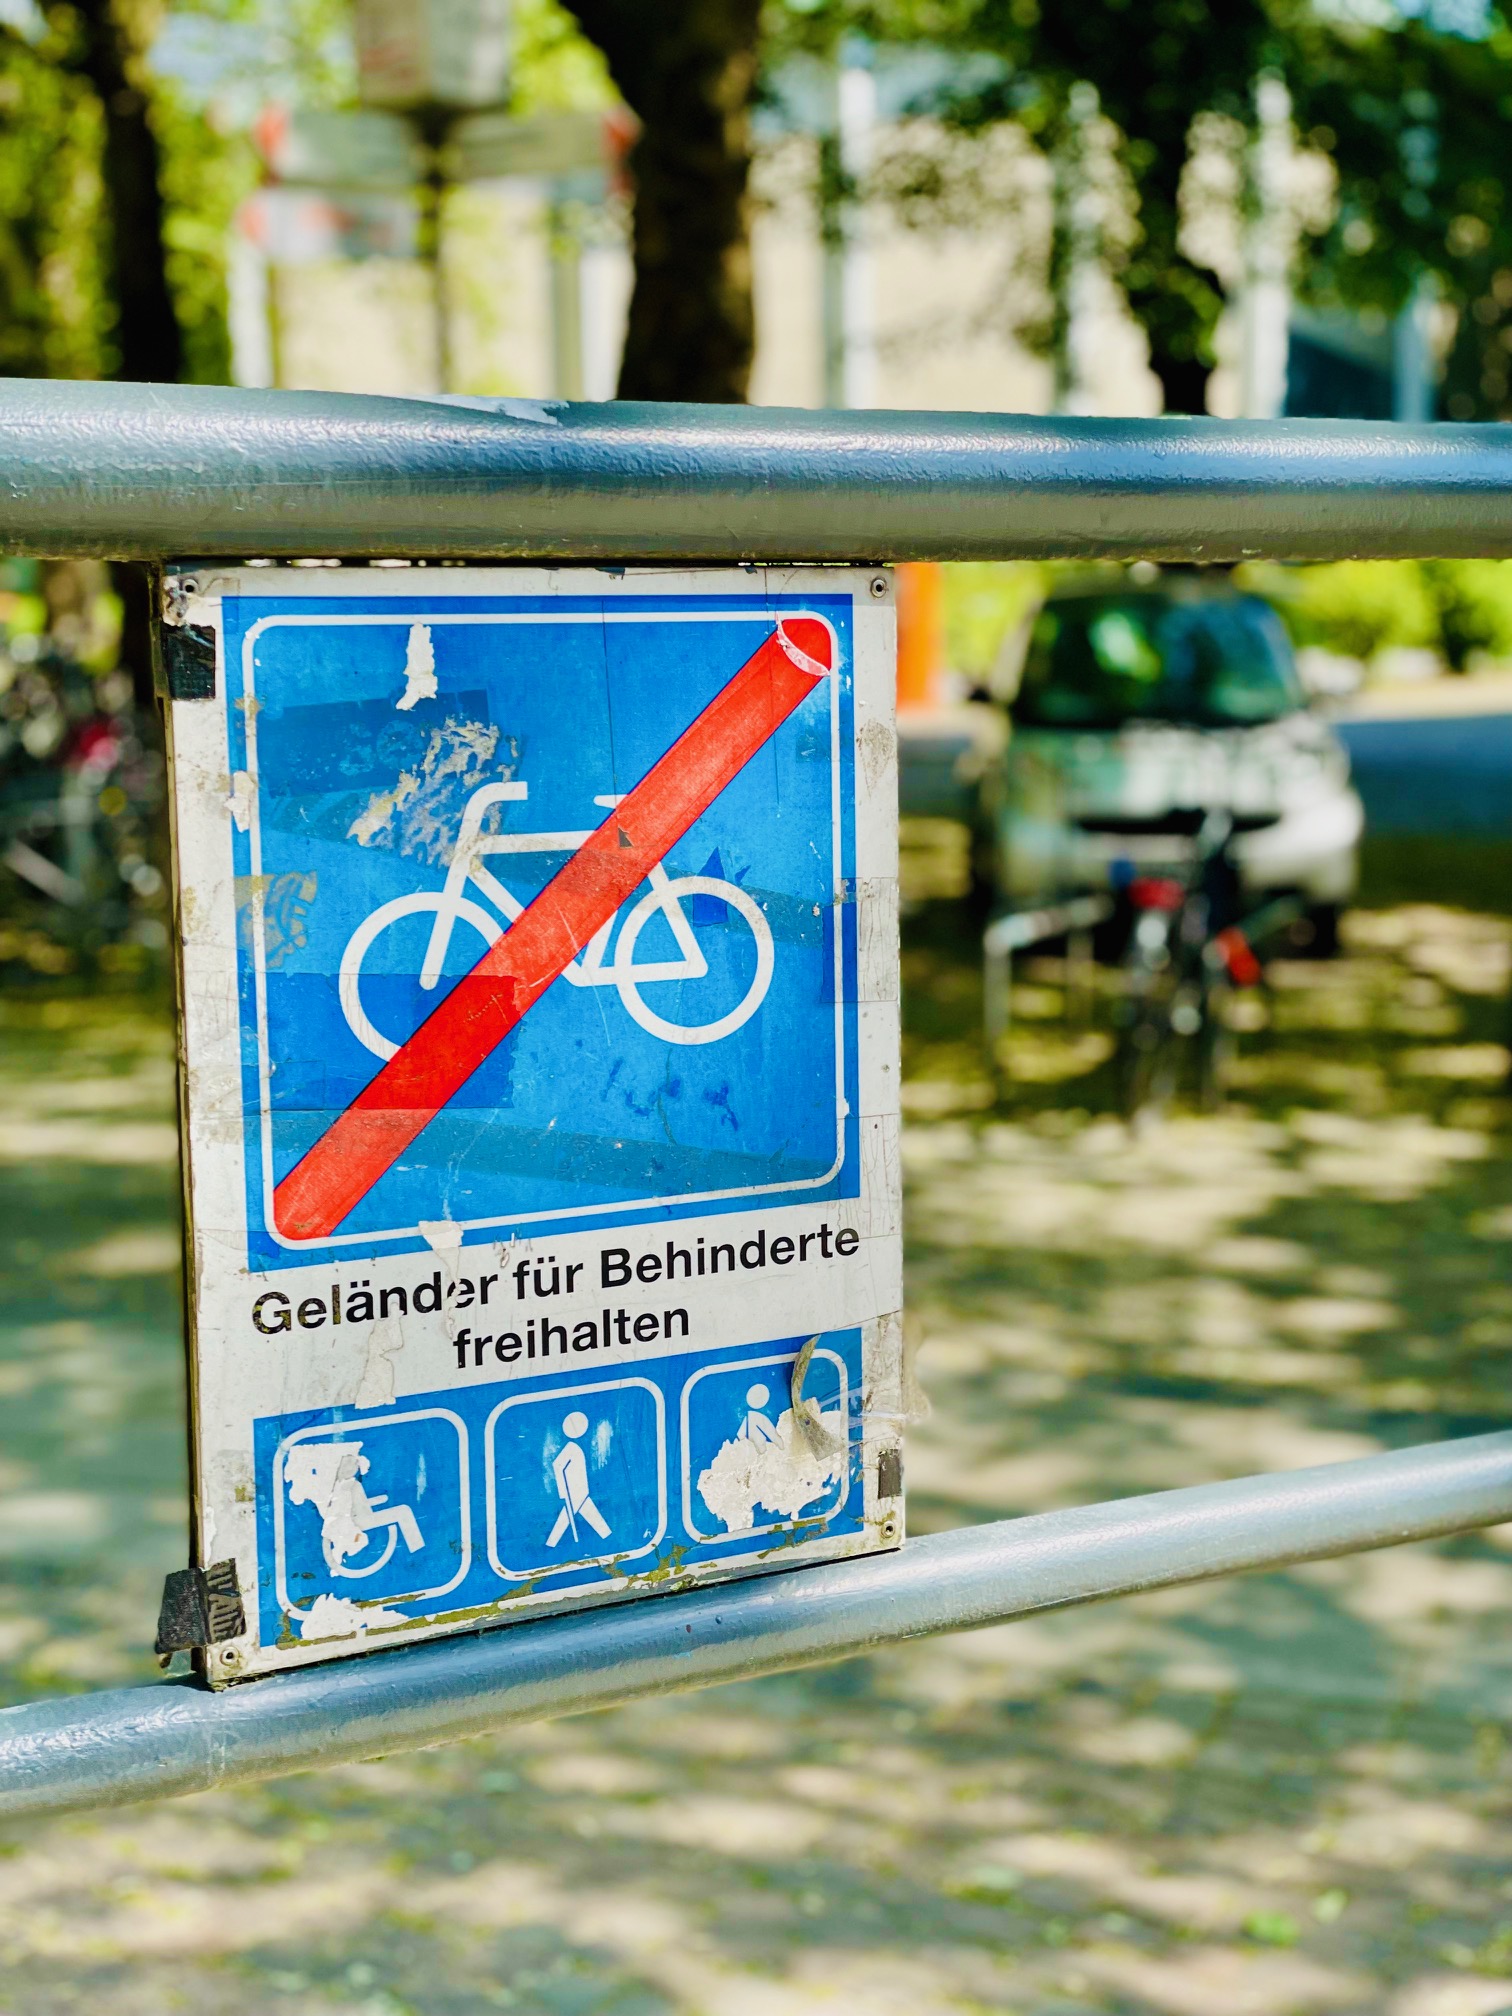 Für mehr Barrierefreiheit an der Universität Hamburg